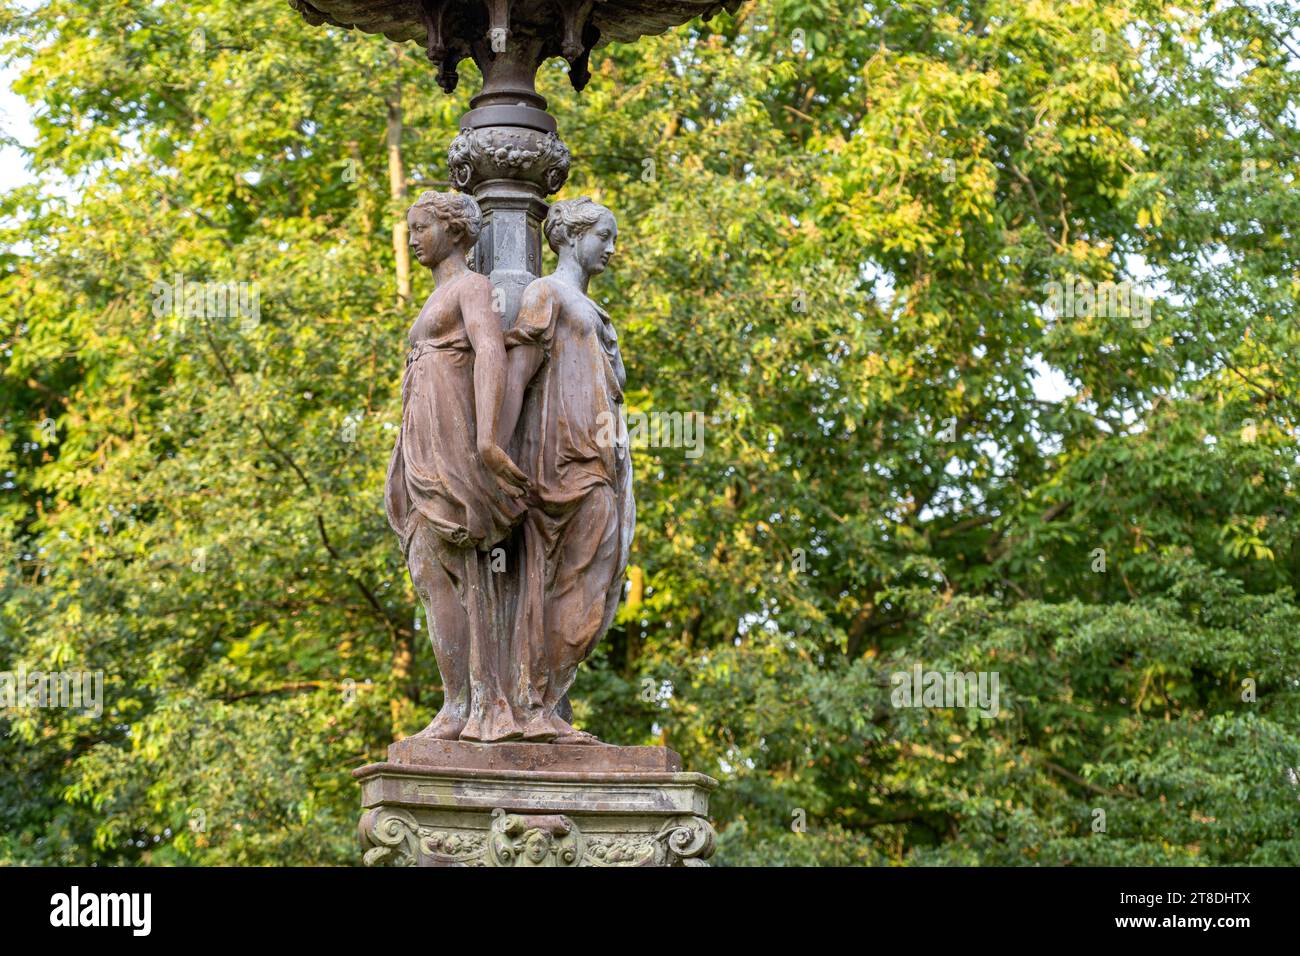 Skulpturen des Brunnen Fontaine les trois Grâces im Park Parc Saint-Pierre à Calais, Frankreich | Sculpture de la Fontaine des trois Grâces Fon Banque D'Images